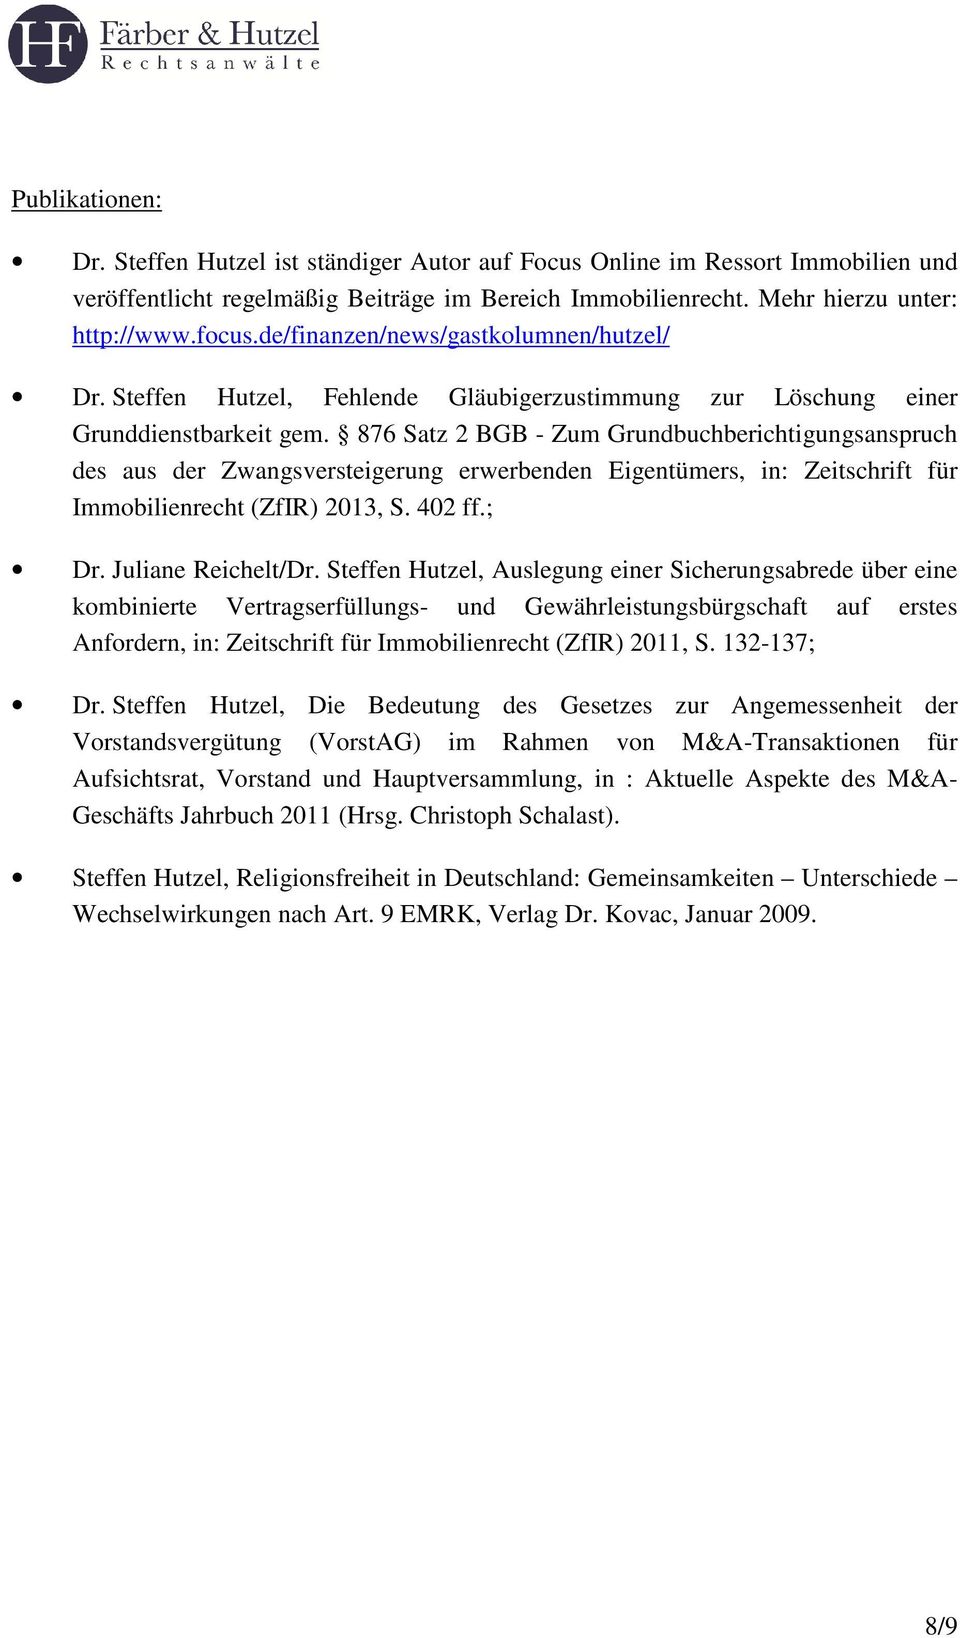 876 Satz 2 BGB - Zum Grundbuchberichtigungsanspruch des aus der Zwangsversteigerung erwerbenden Eigentümers, in: Zeitschrift für Immobilienrecht (ZfIR) 2013, S. 402 ff.; Dr. Juliane Reichelt/Dr.